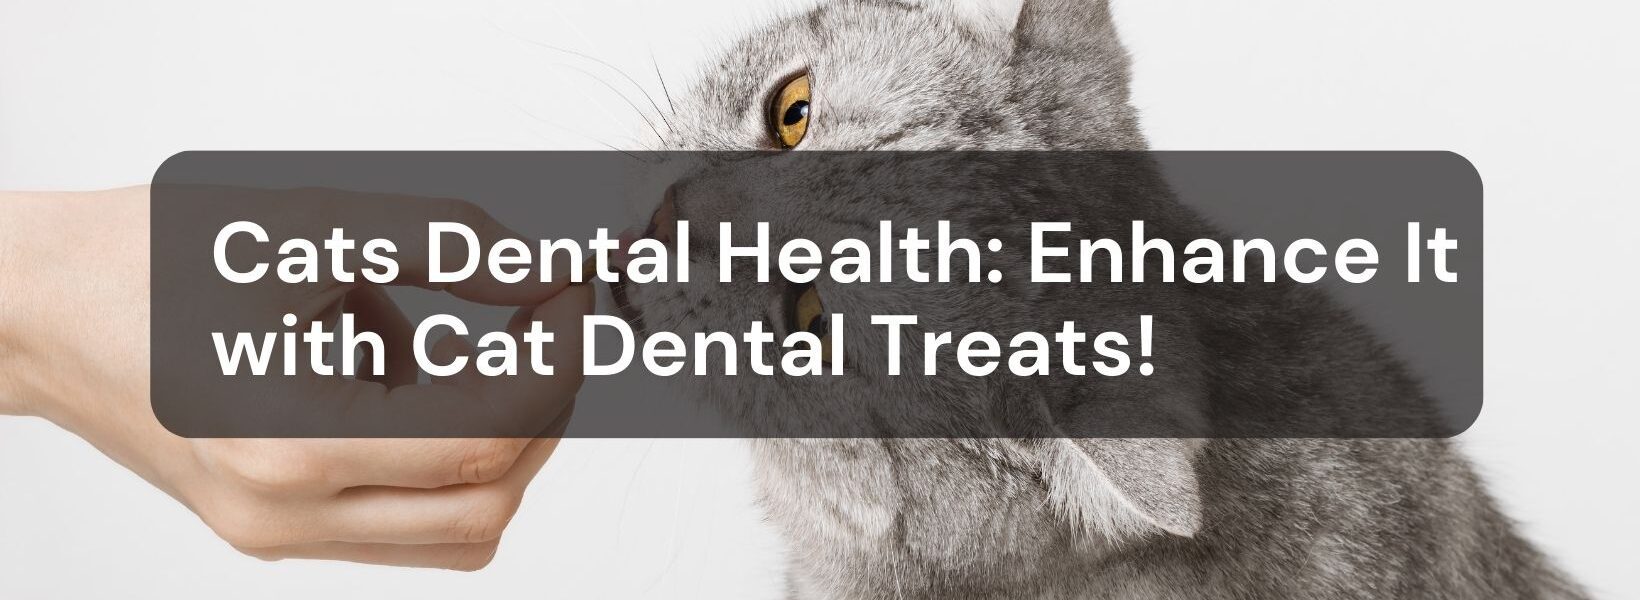 Cats Dental Health